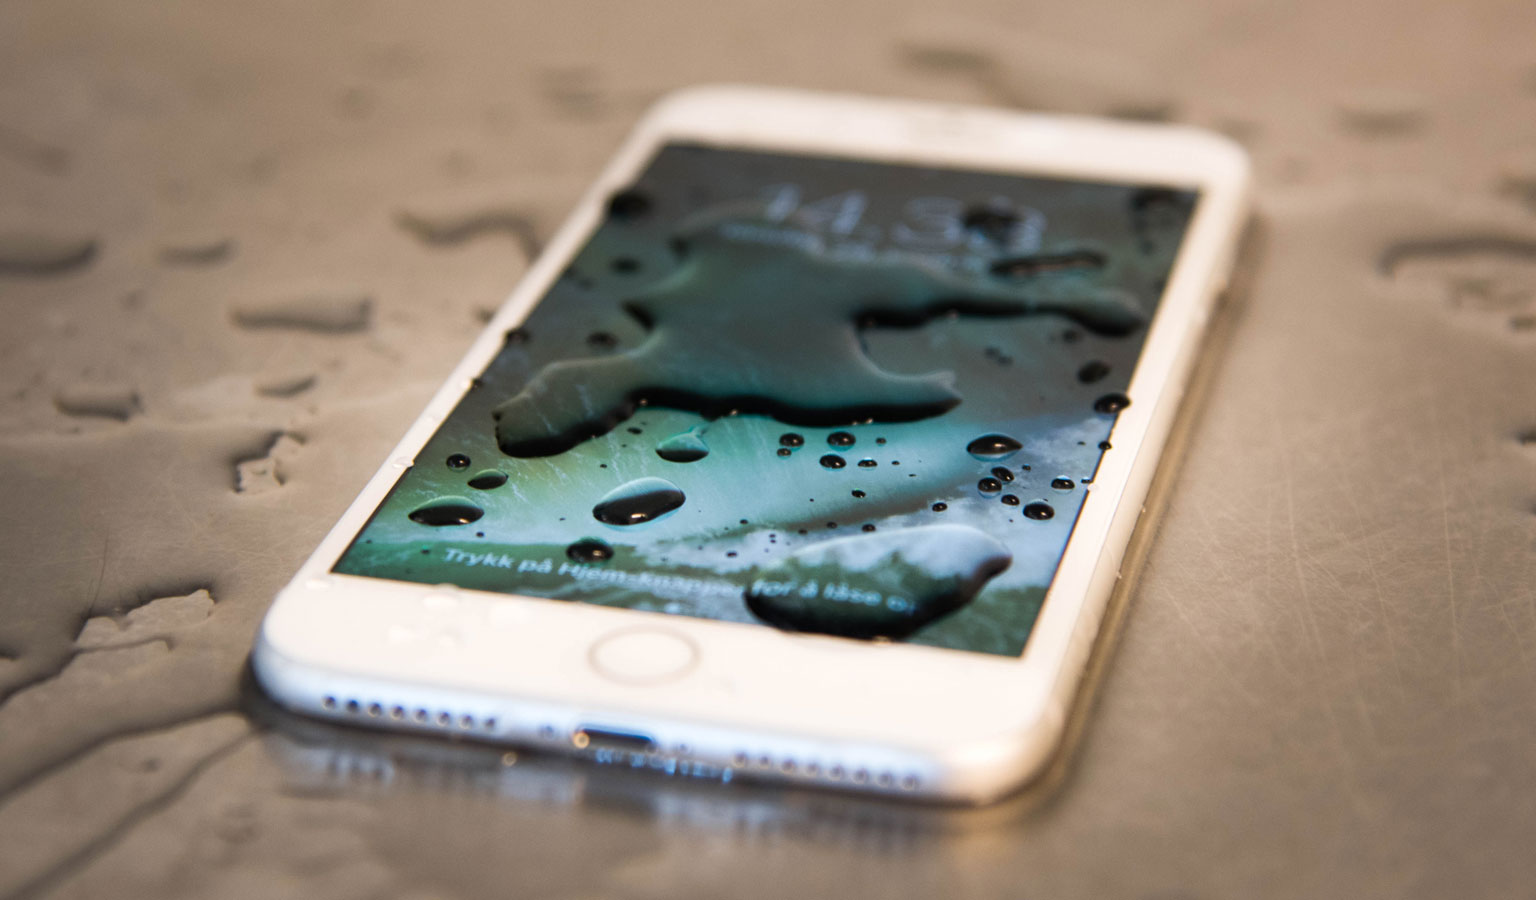 iPhone 7 er i likhet med mange andre nye mobiler vanntett